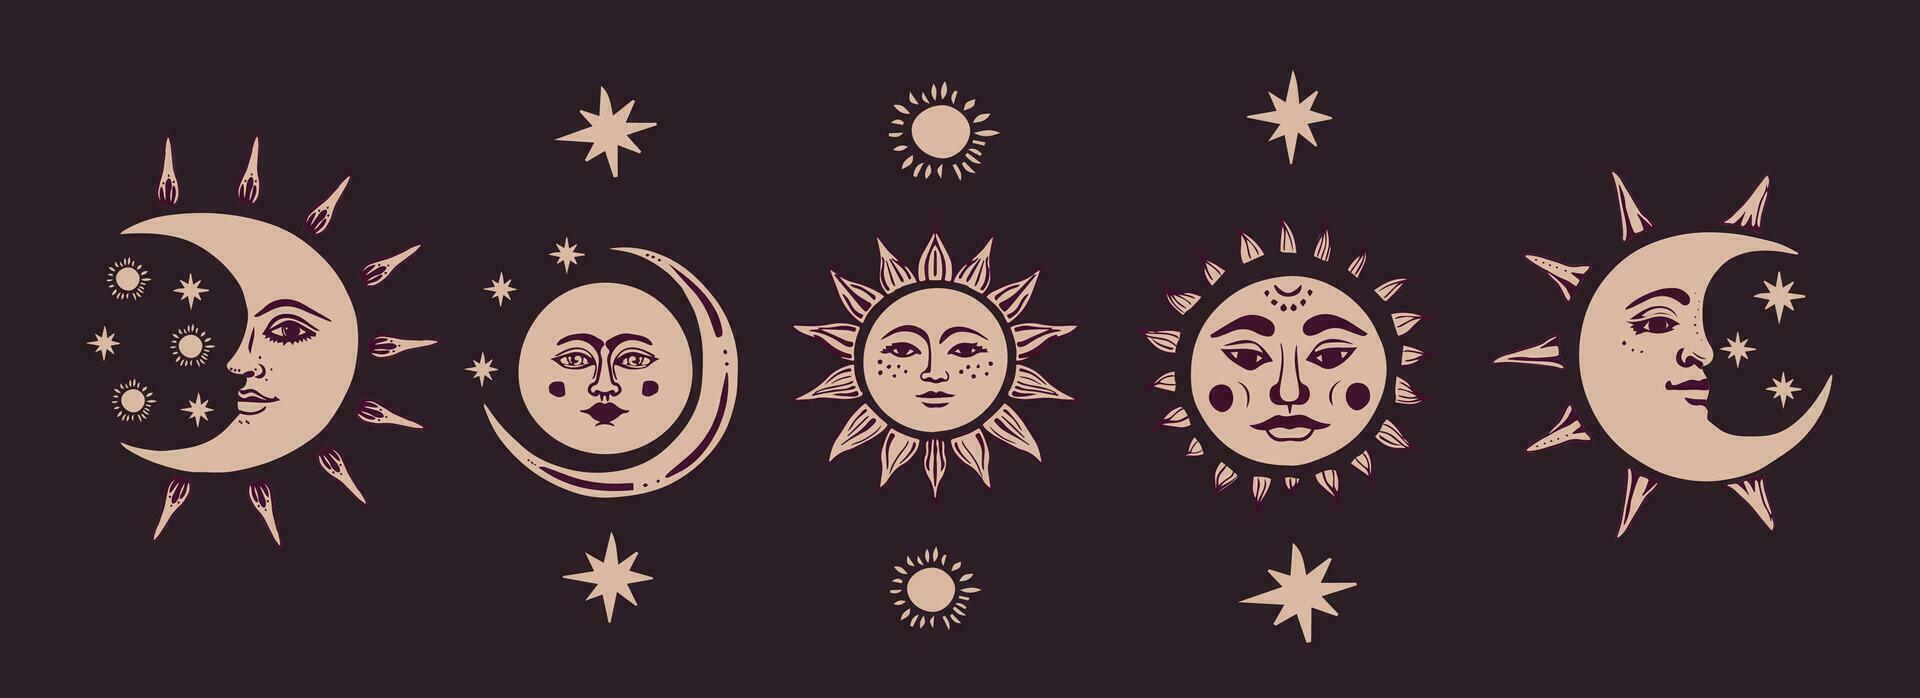 Sol, halvmåne, måne ansikten isolerat på en mörk bakgrund. vektor boho illustration.